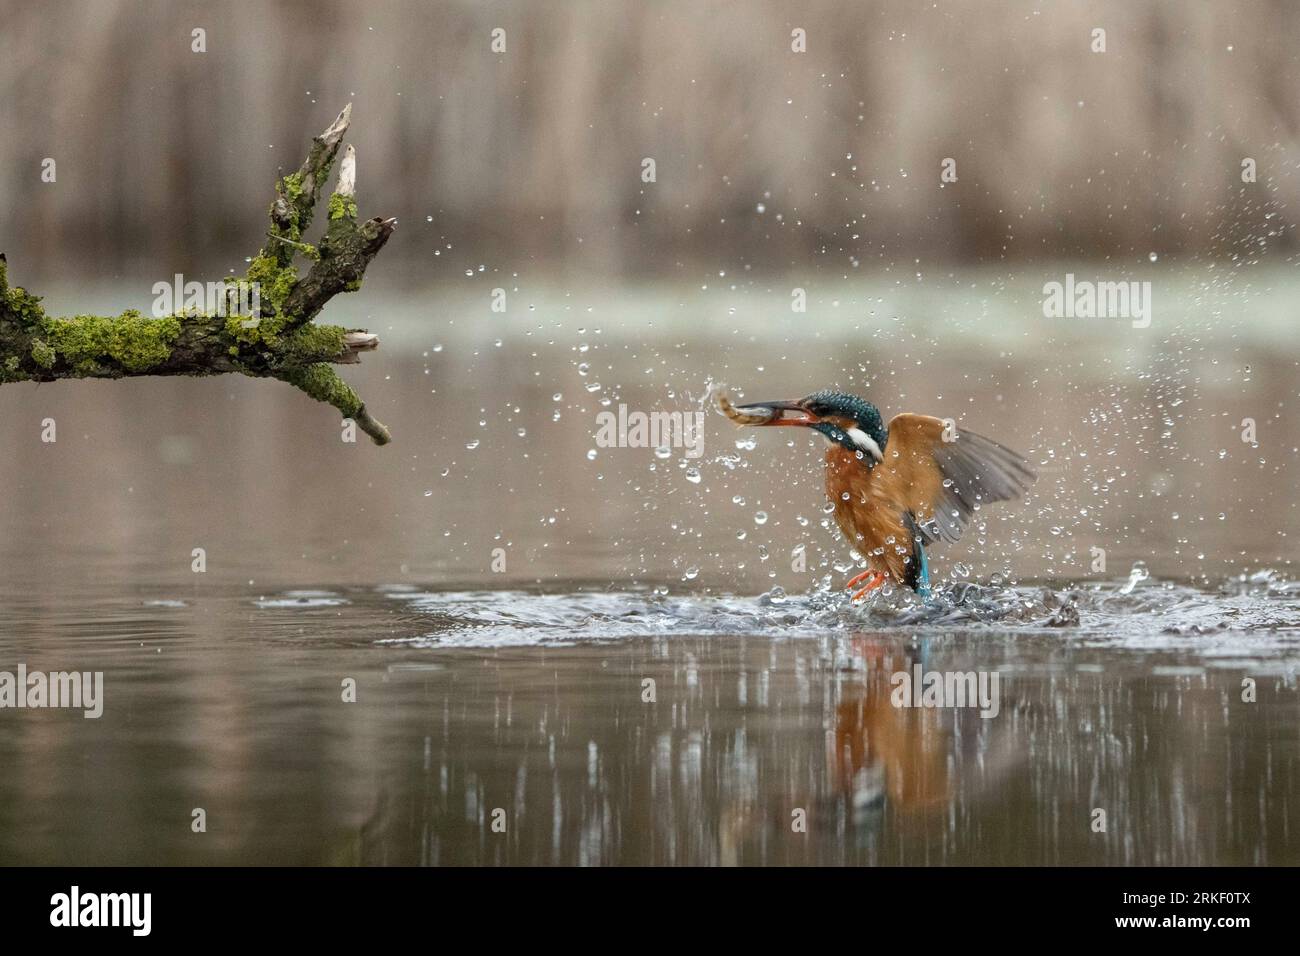 Un tuffo e una presa per il kingfisher. Bourne, Inghilterra: SPLENDIDE immagini di un kingfisher che fa delle graziose immersioni e balla sotto la pioggia, catturando me Foto Stock